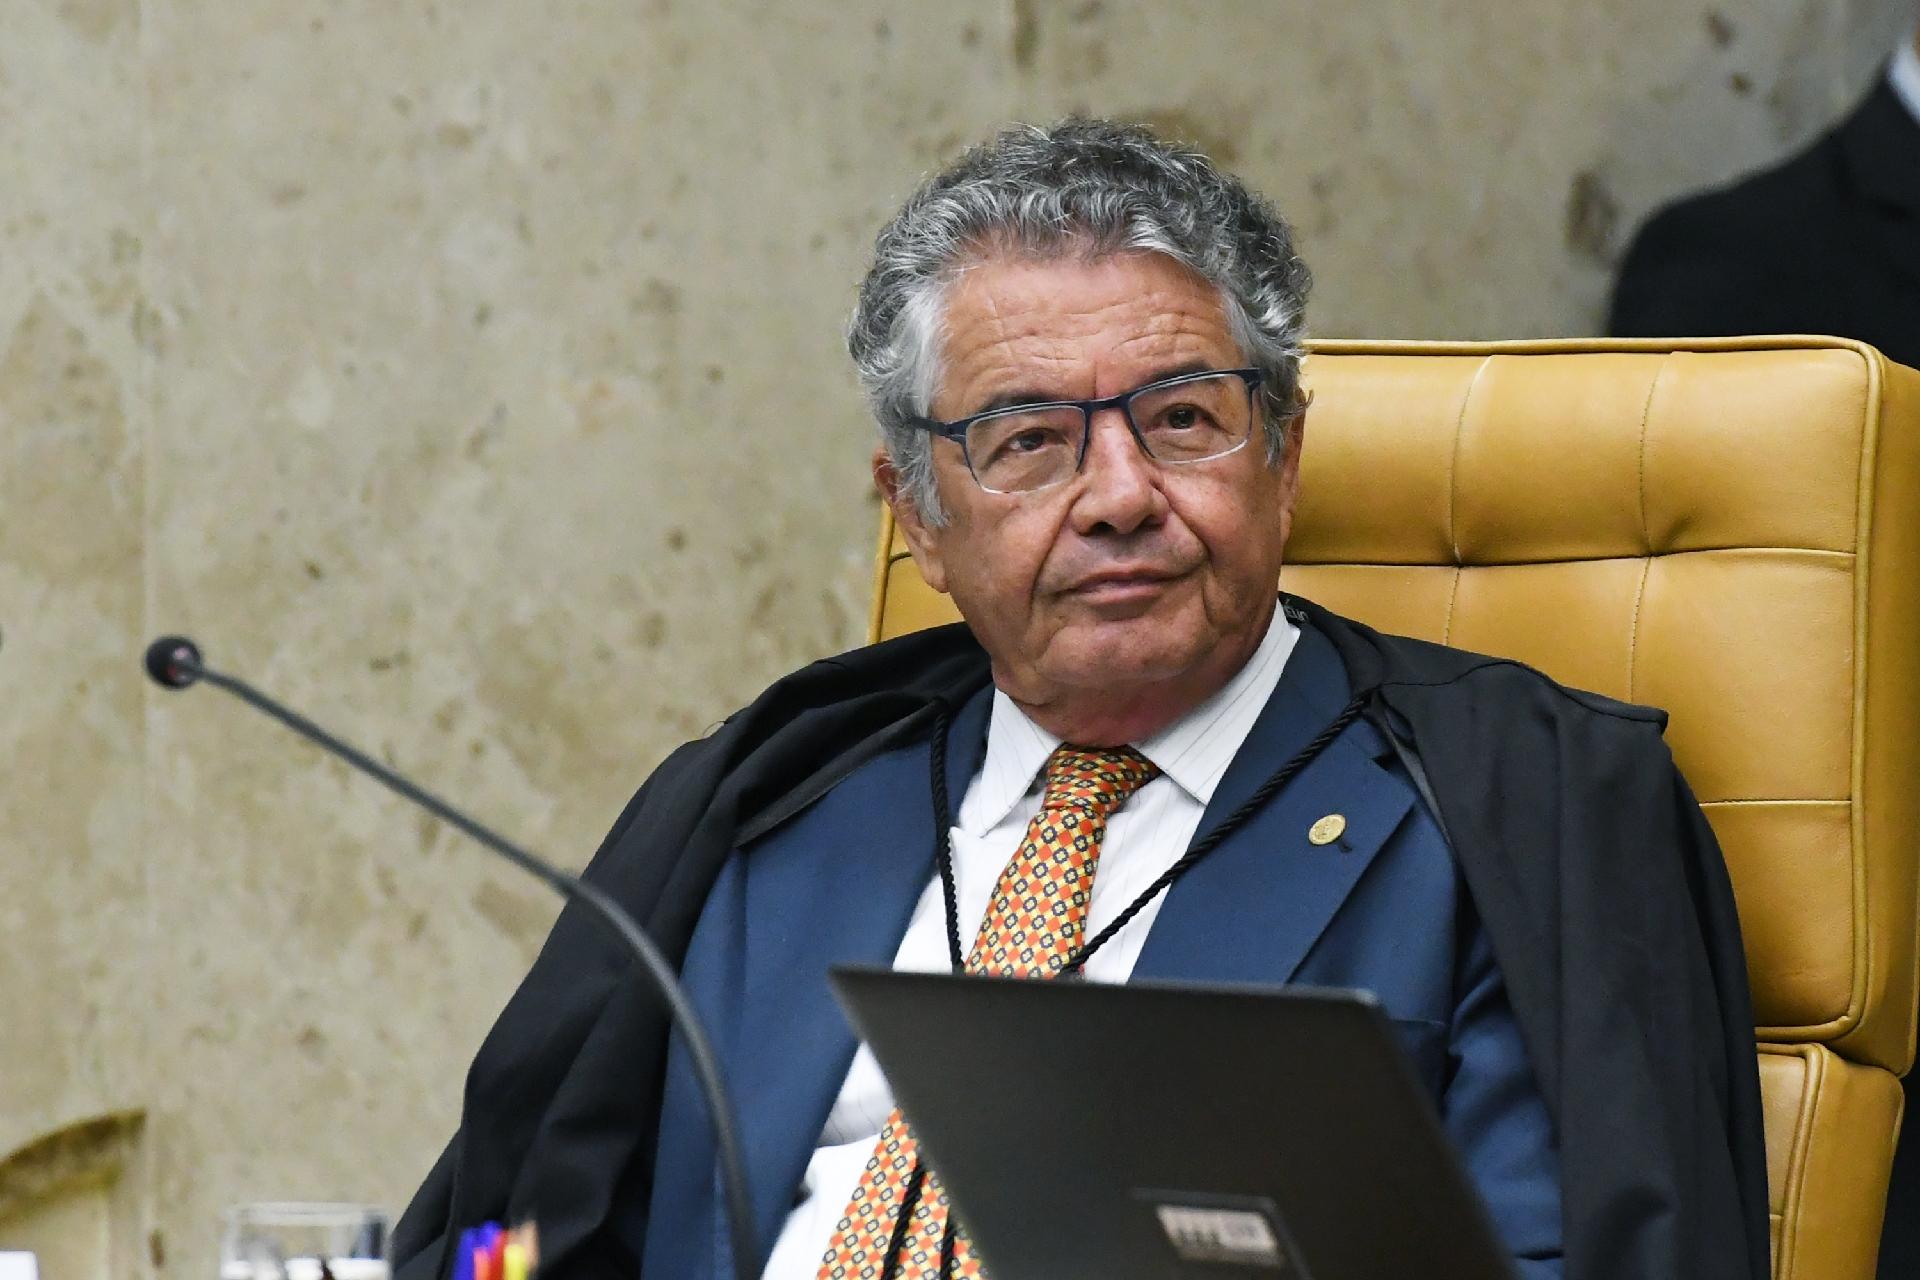 2ª Turma do STF derruba decisão de Marco Aurélio sobre sócio da Telexfree -  20/10/2020 - UOL Economia